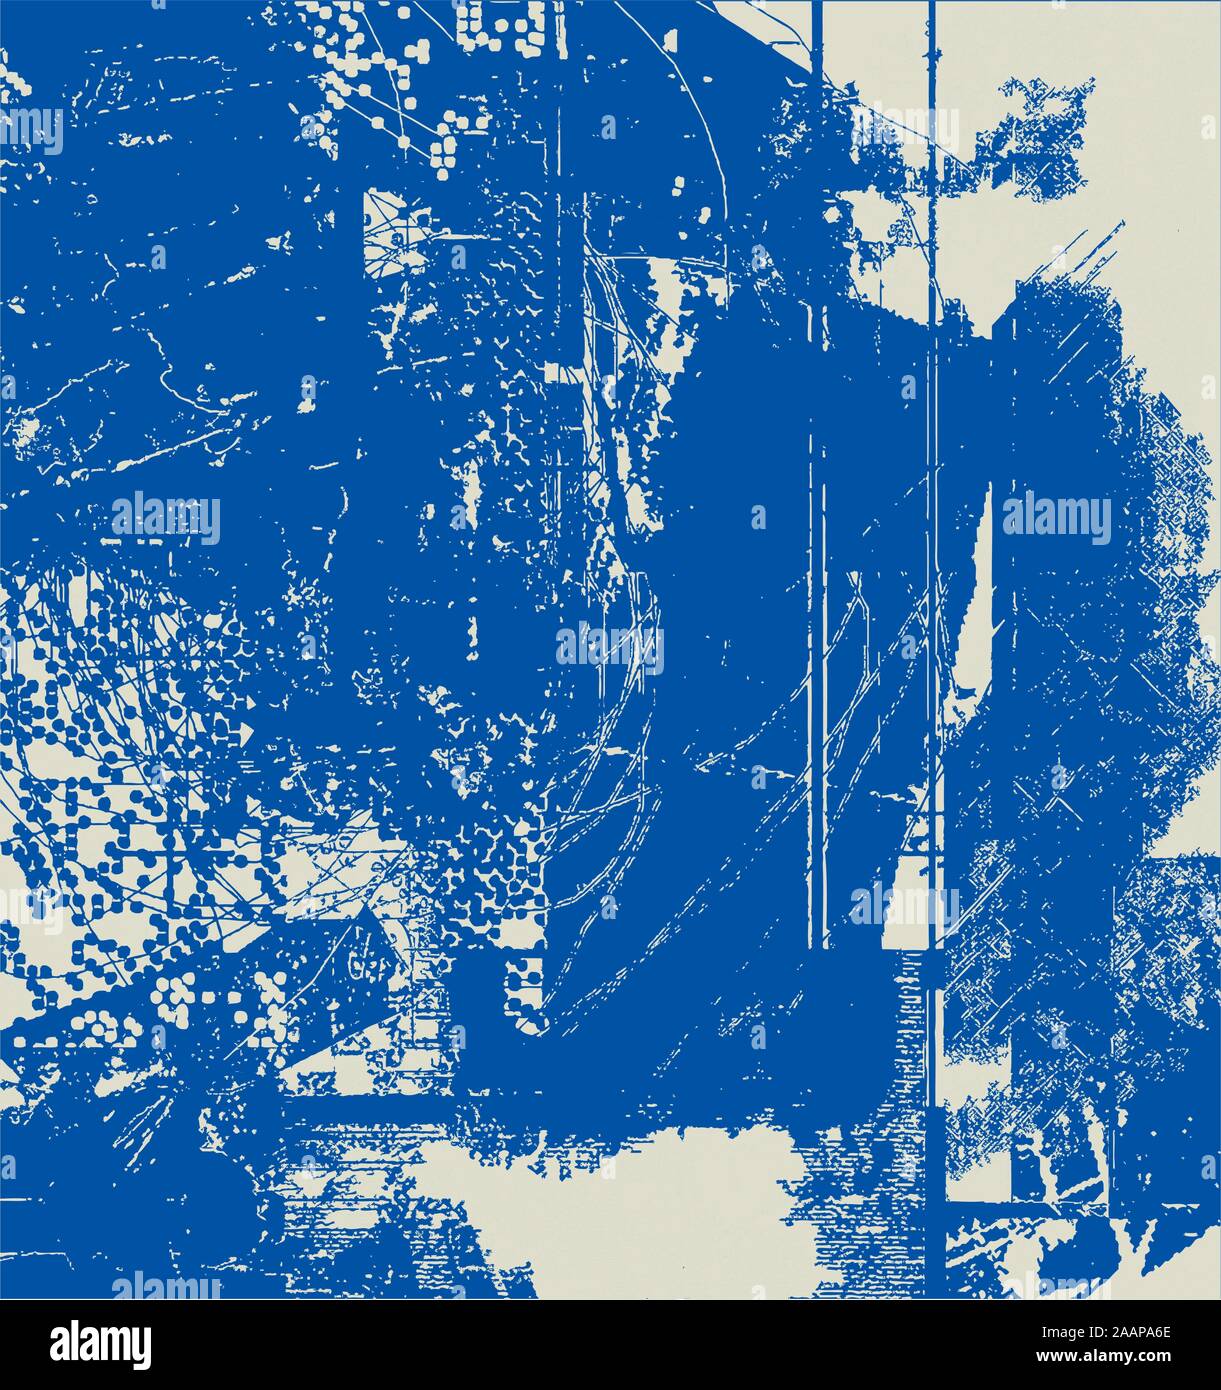 Abstract Background effetti Grunge Design della carta - Colori blu - uno stile rétro Illustrazione Vettoriale